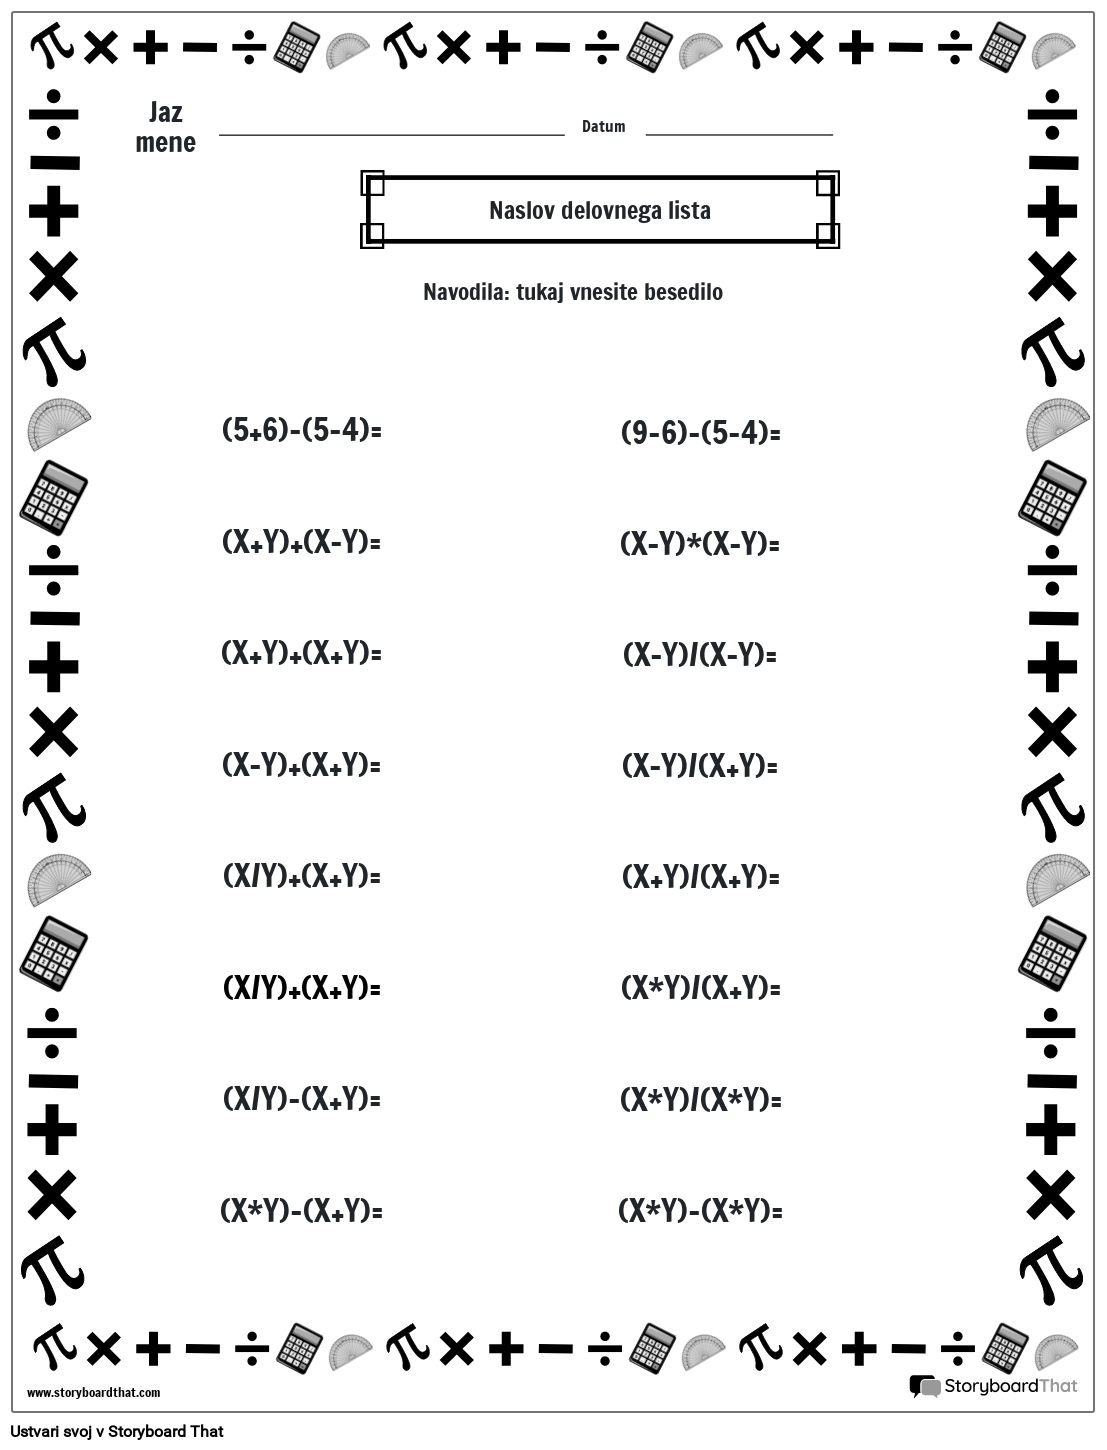 Delovni list za vrstni red operacij z matematično obrobo (črno-belo)